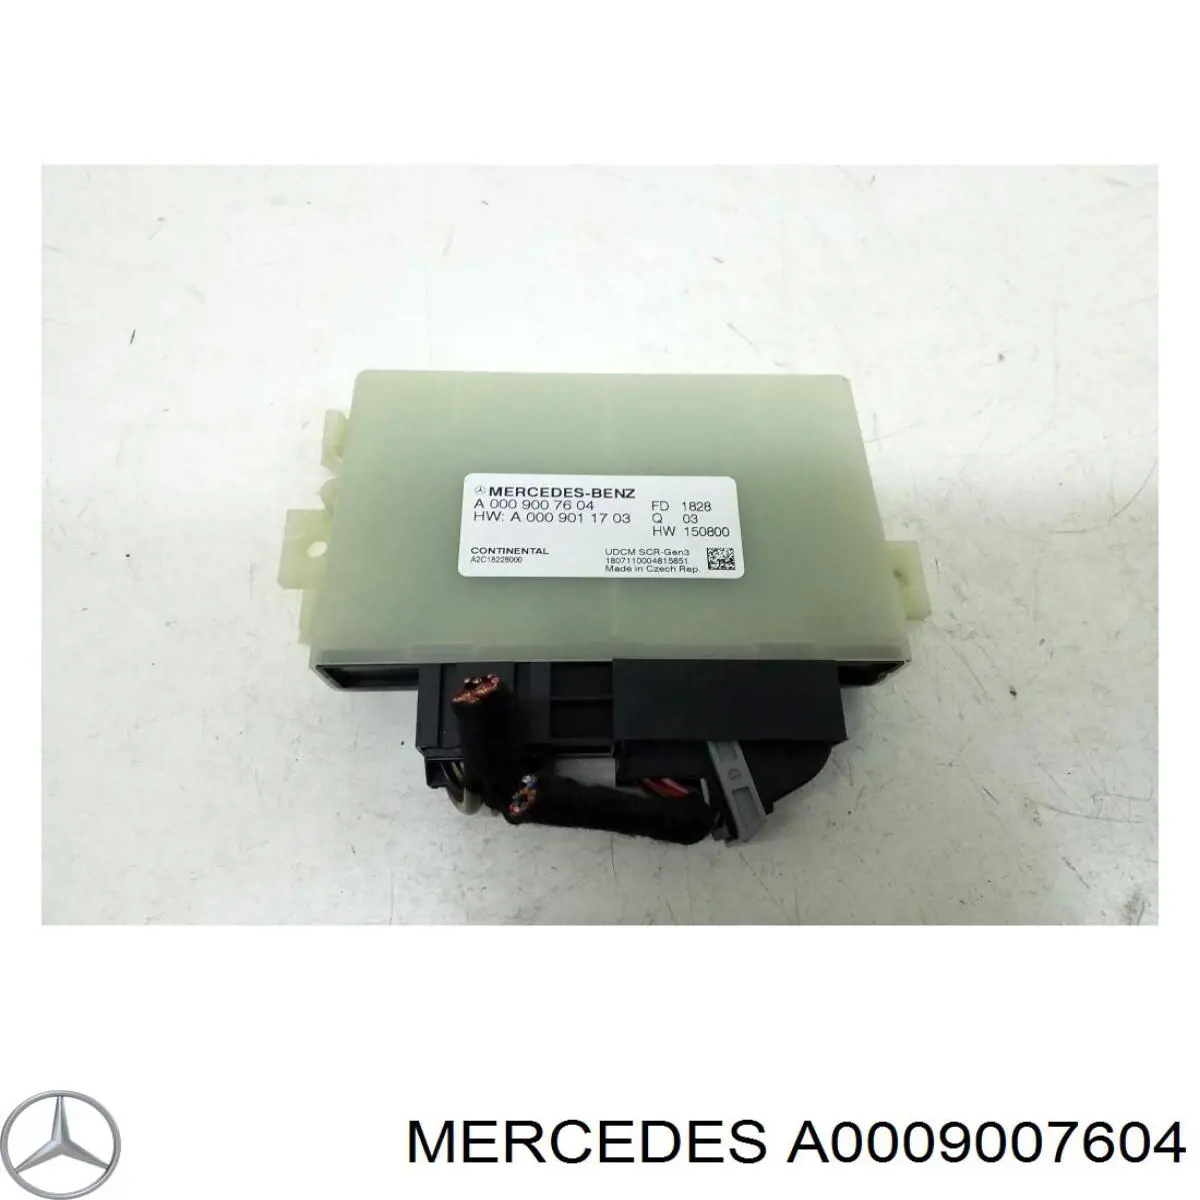 A000900760480 Mercedes unidad de control adblue